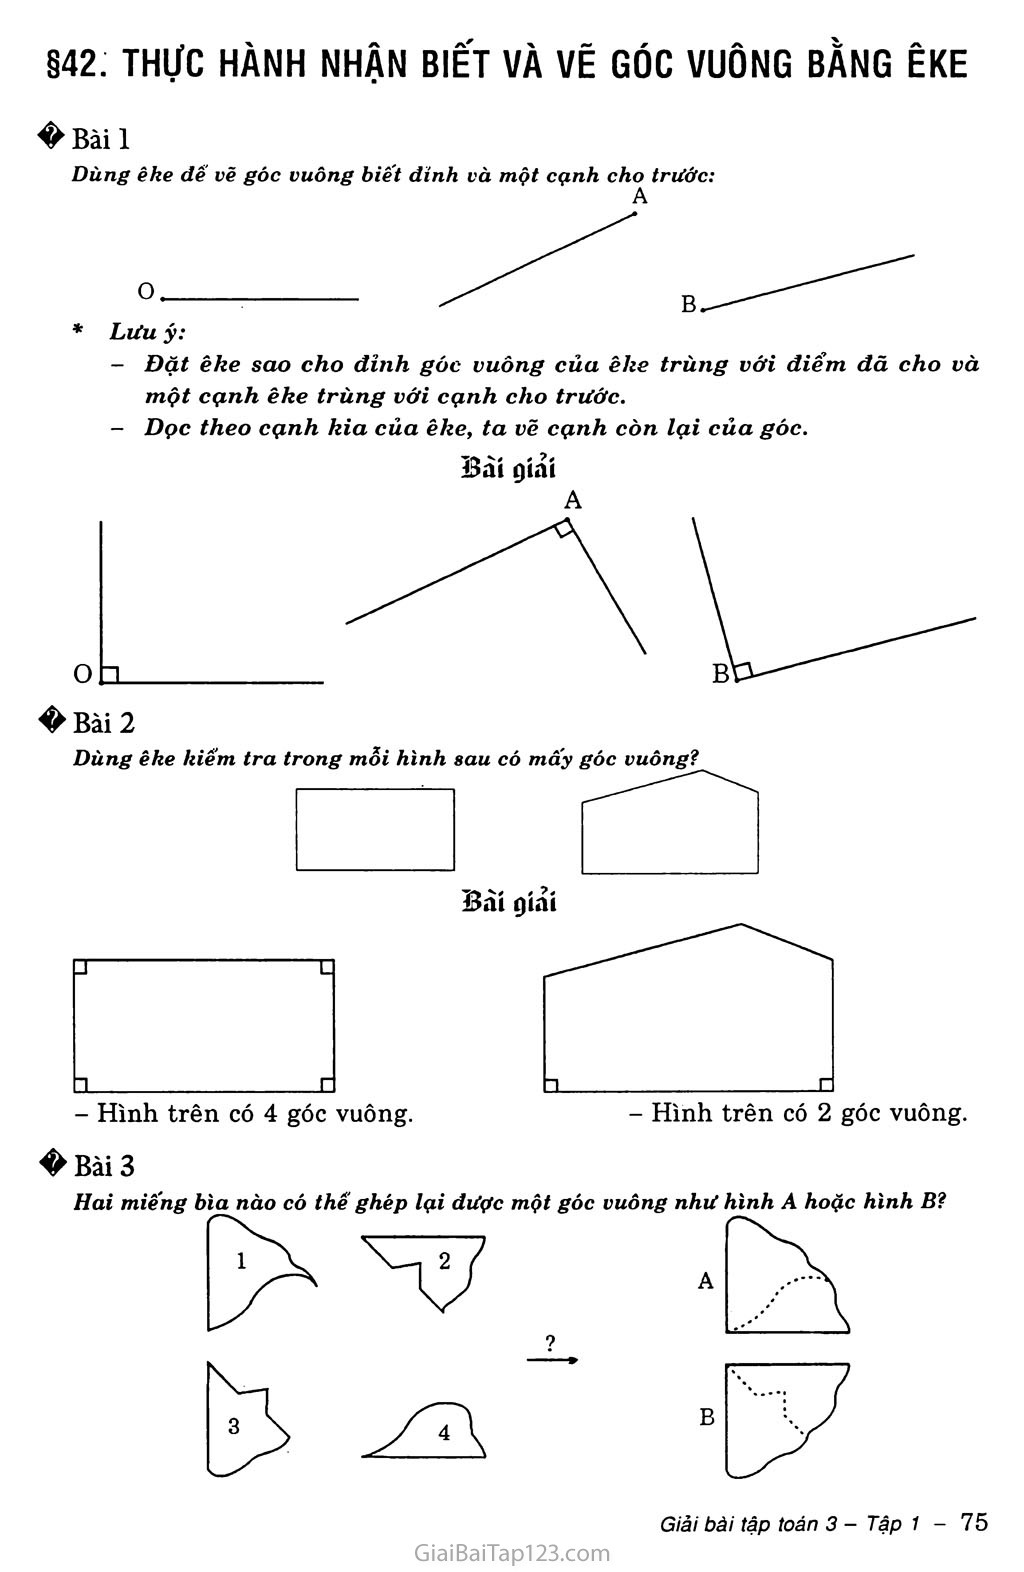 Cách sử dụng êke để vẽ góc vuông như thế nào?
